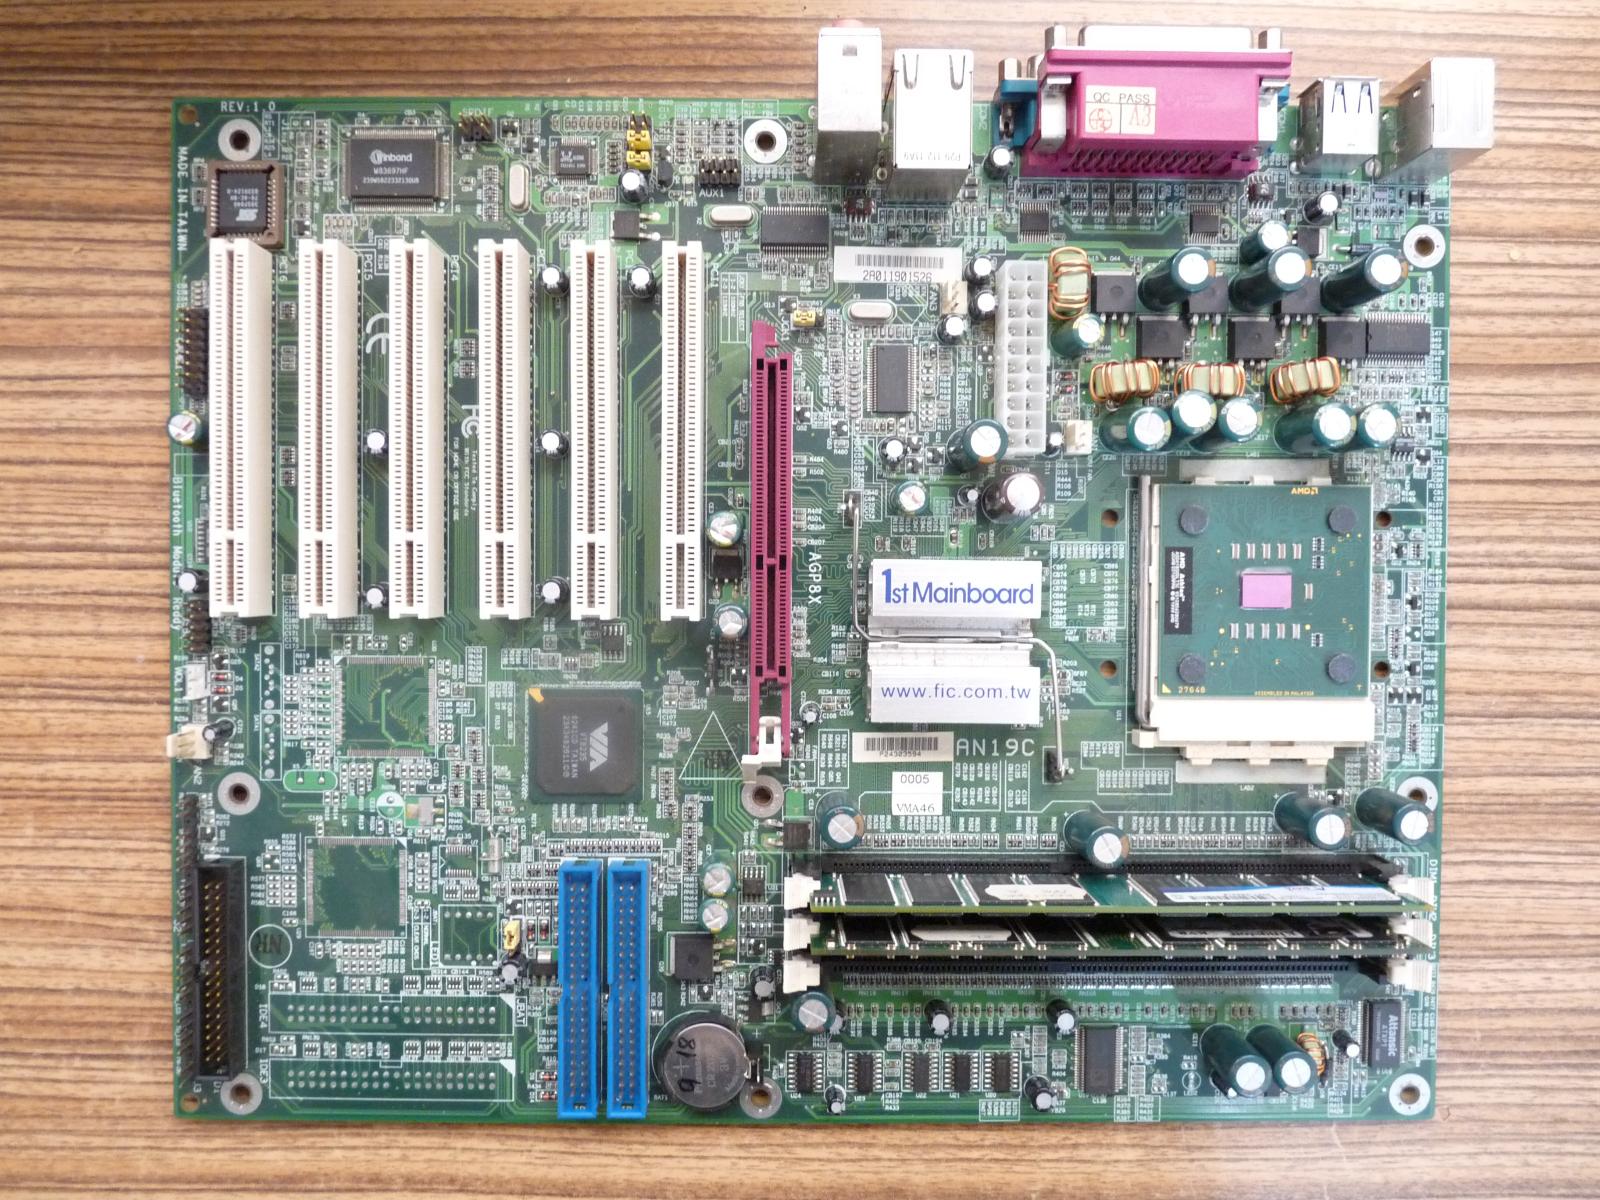 Základní deska FIC AN19C socket 462 s komponenty - rok 2003 - Počítače a hry